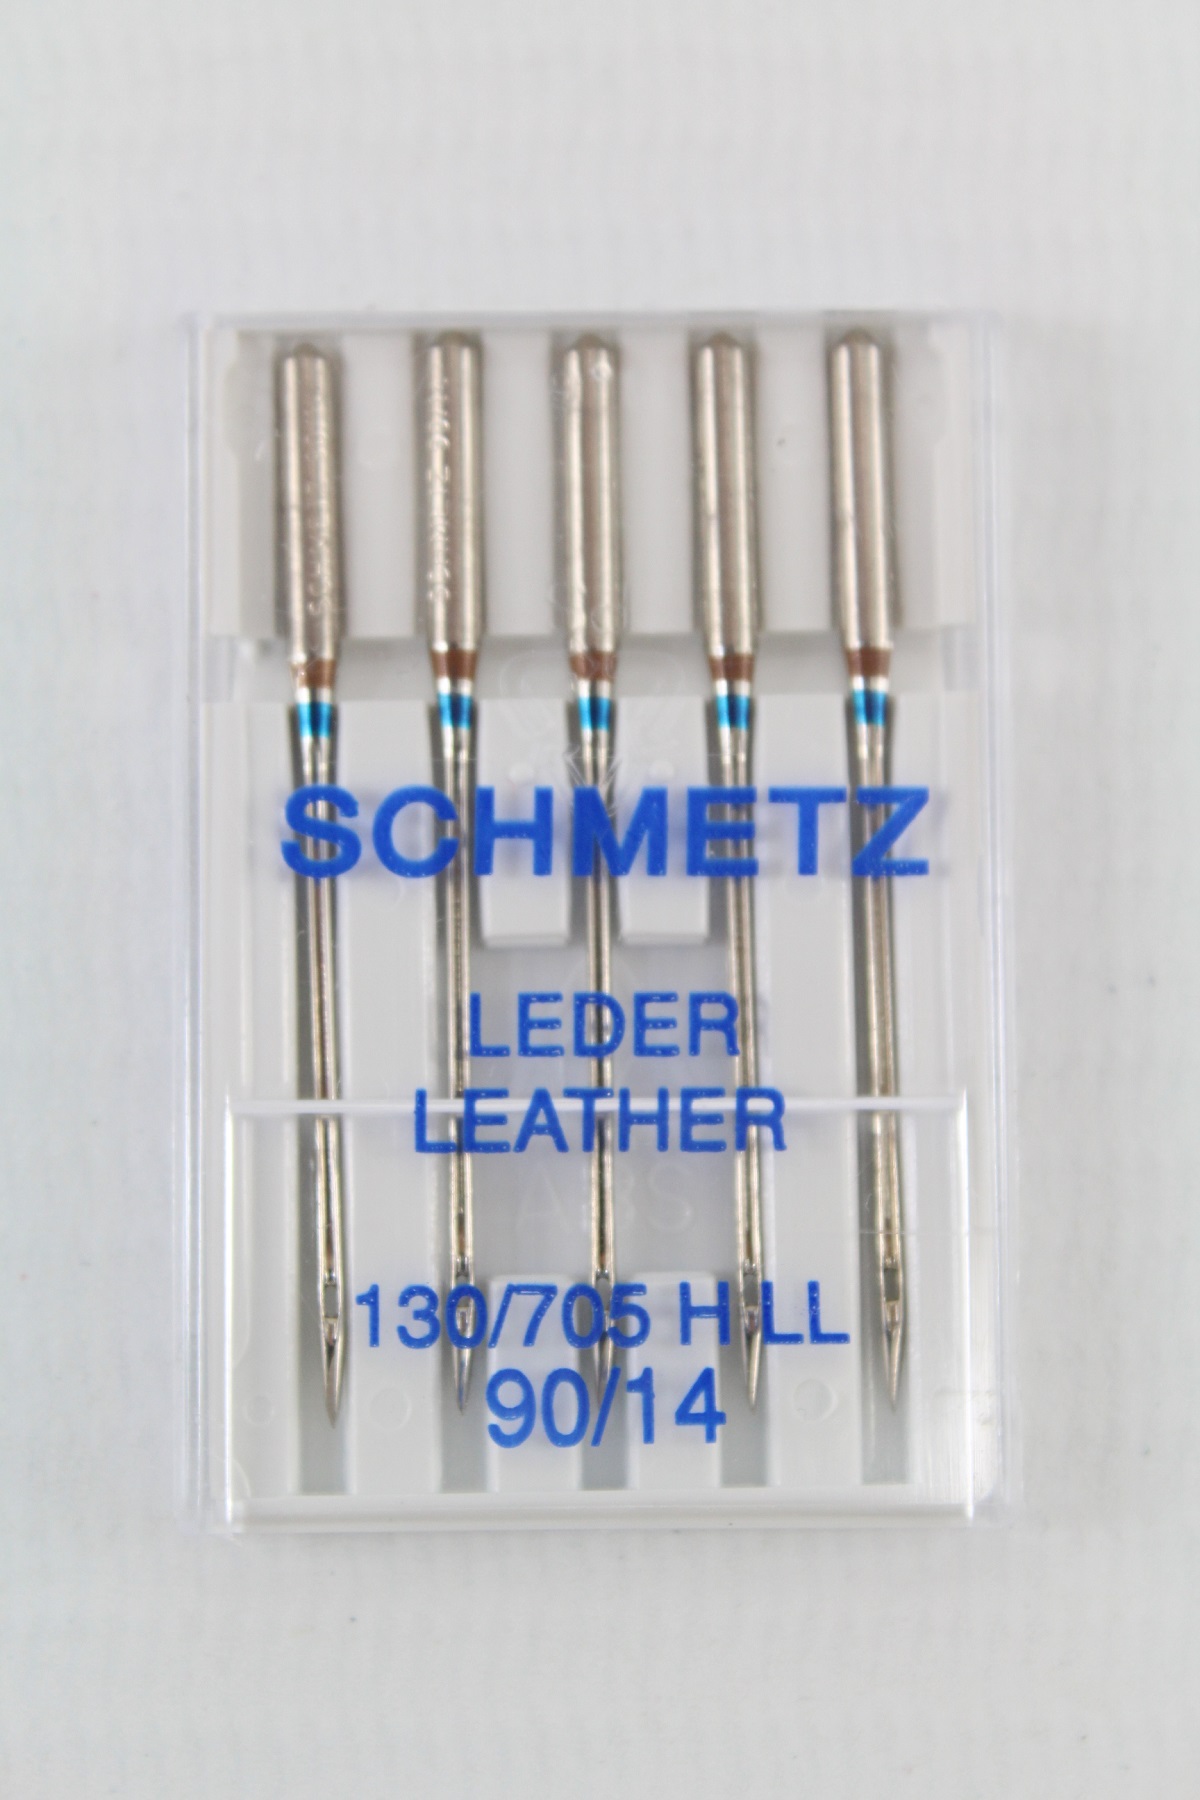 Schmetz Leder 130/705 H LL 90/14